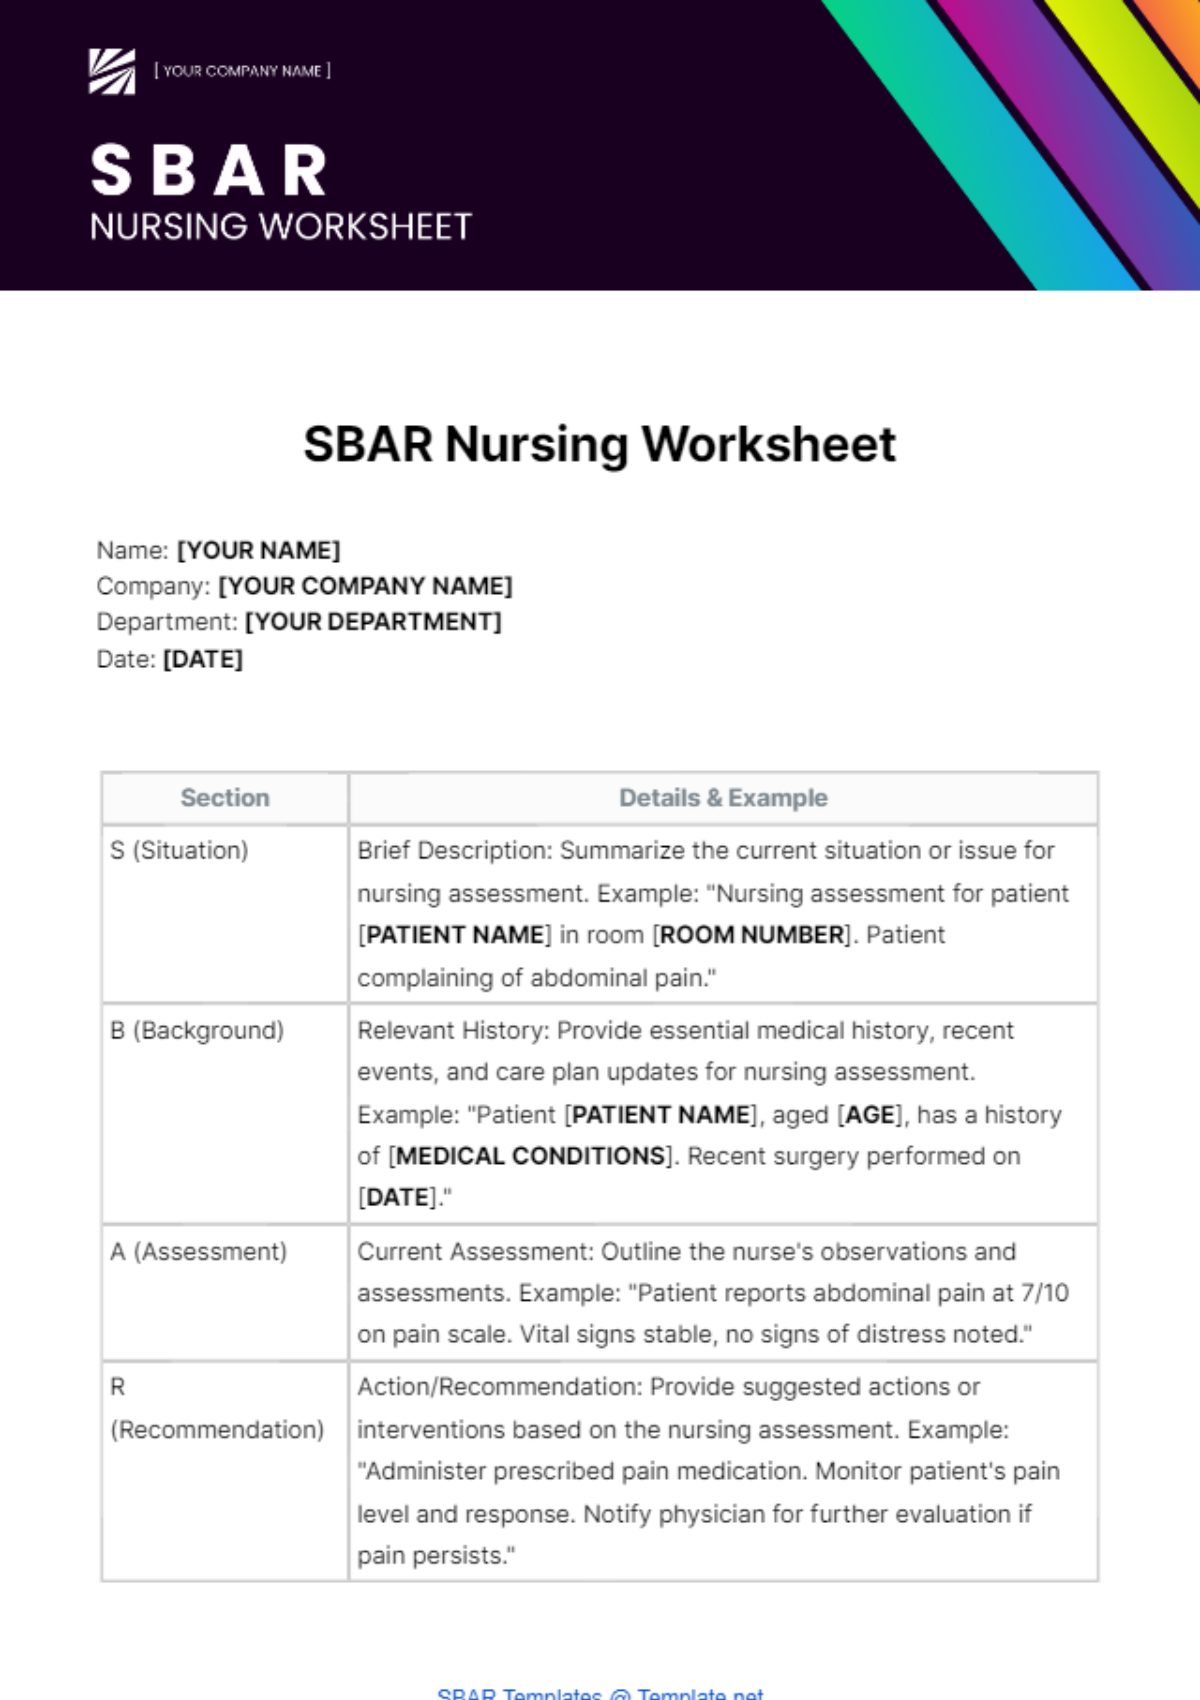 Free SBAR Nursing Worksheet Template